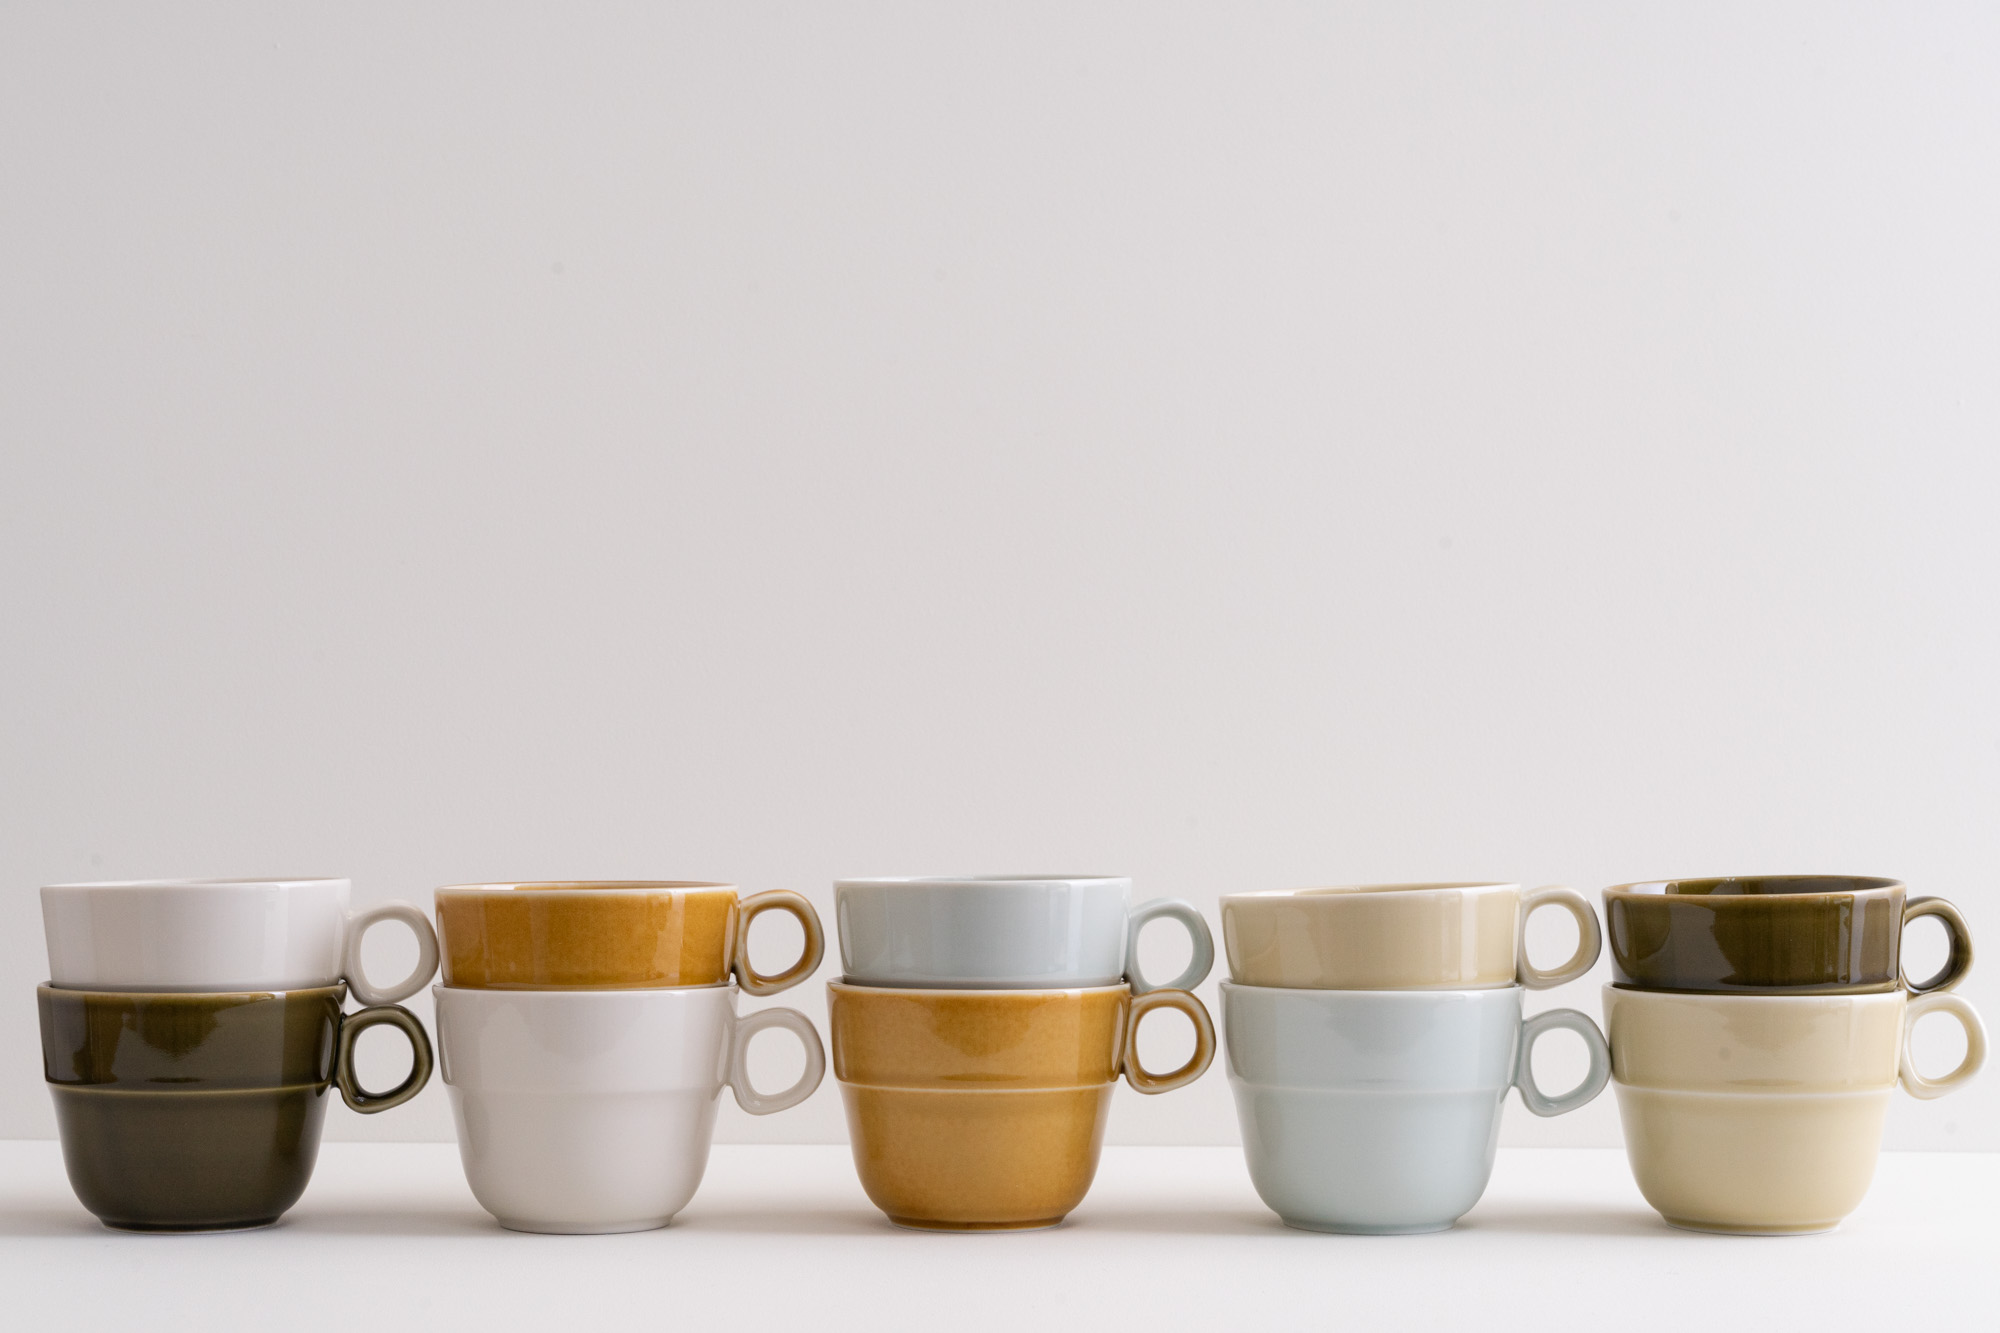 吉田手工業デザイン室のTRIPWAREシリーズからスタッキングも出来る機能的でおしゃれなマグカップ。